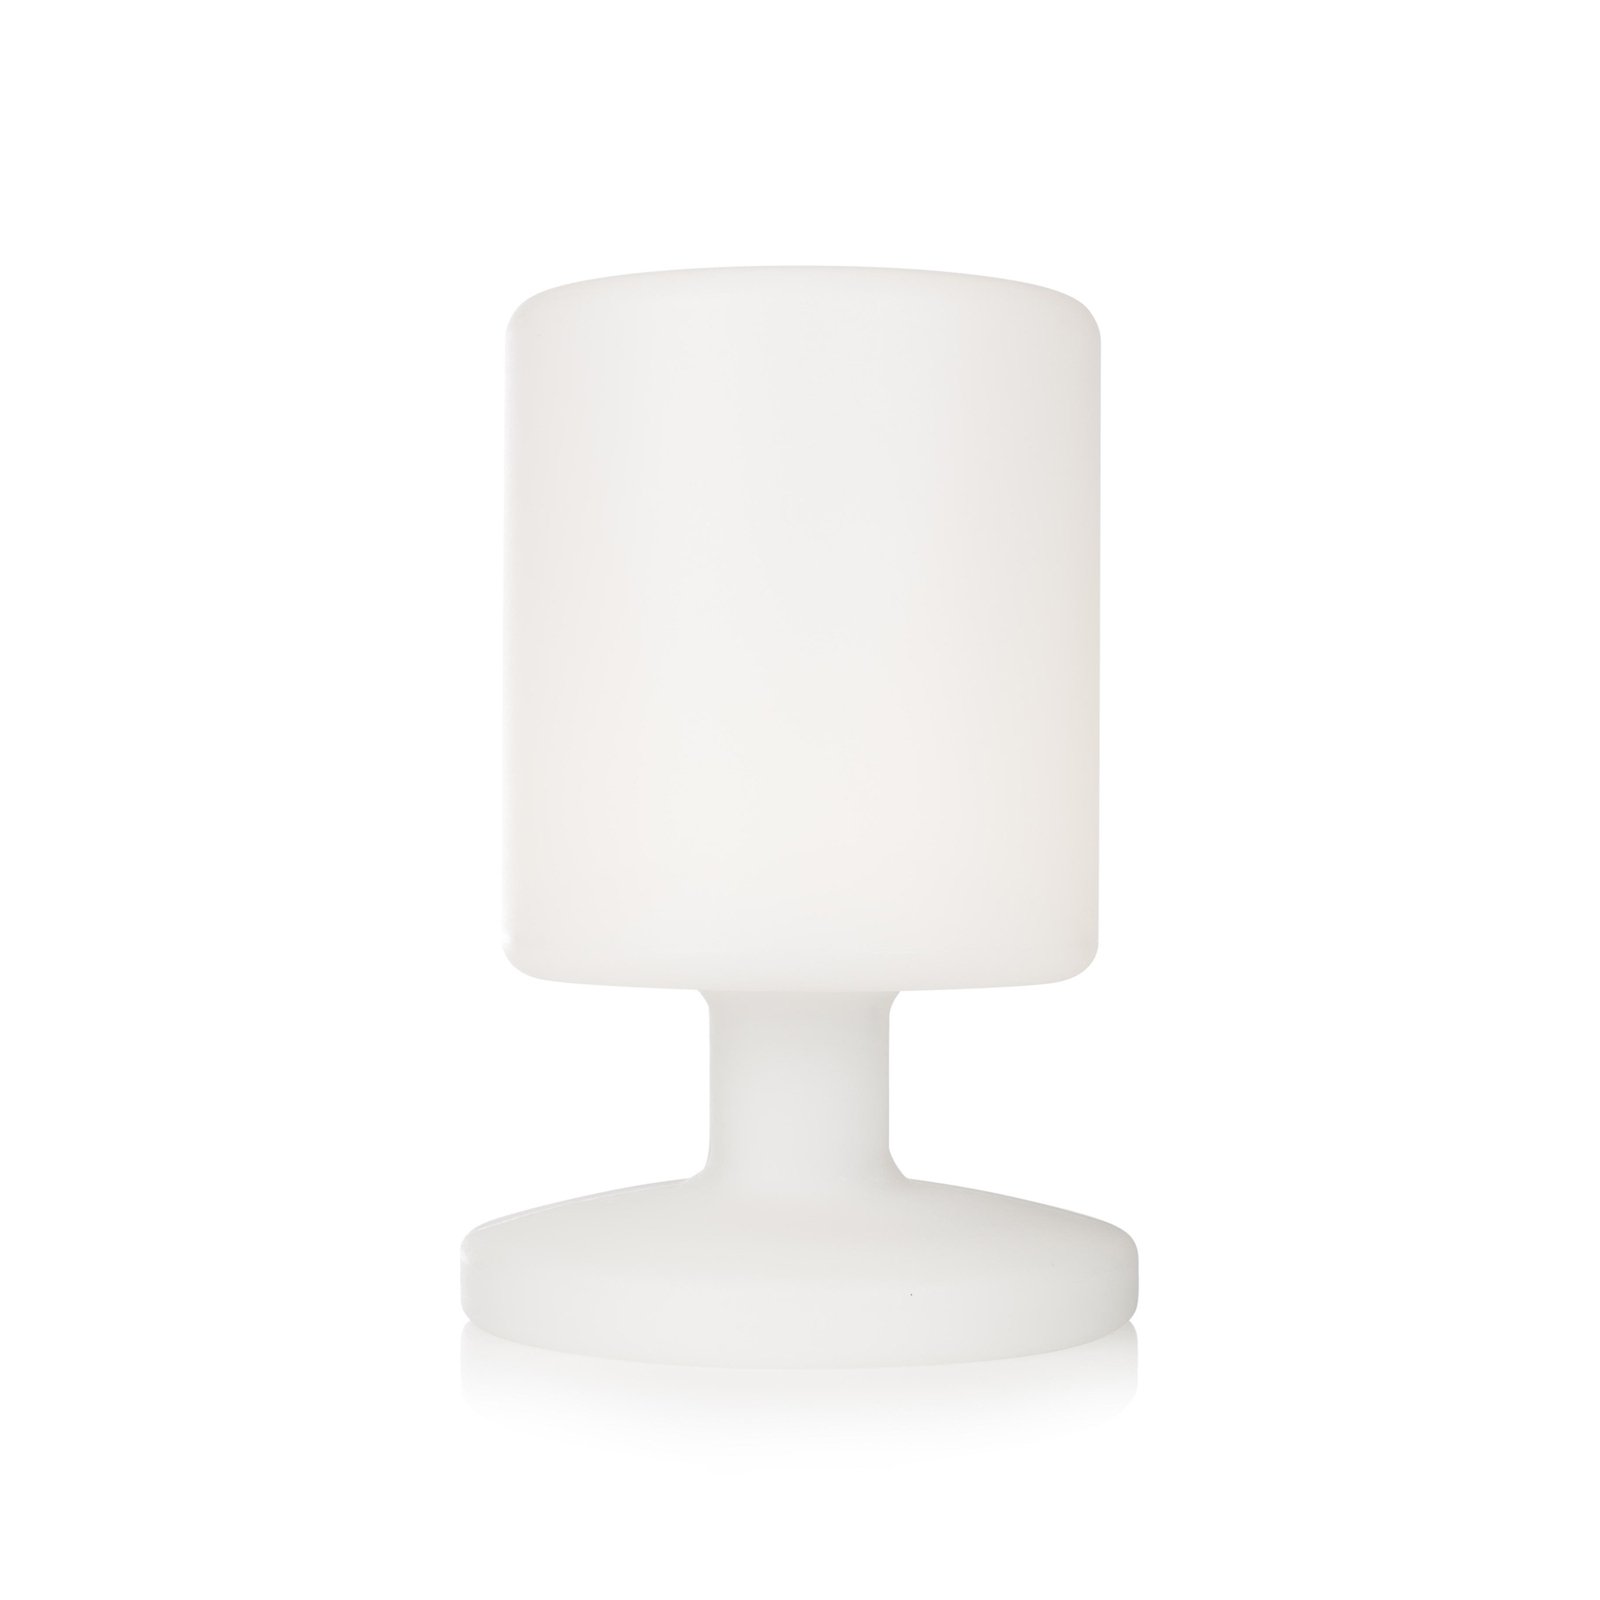 Lampada da tavolo LED Ben per interni ed esterni, batteria ricaricabile